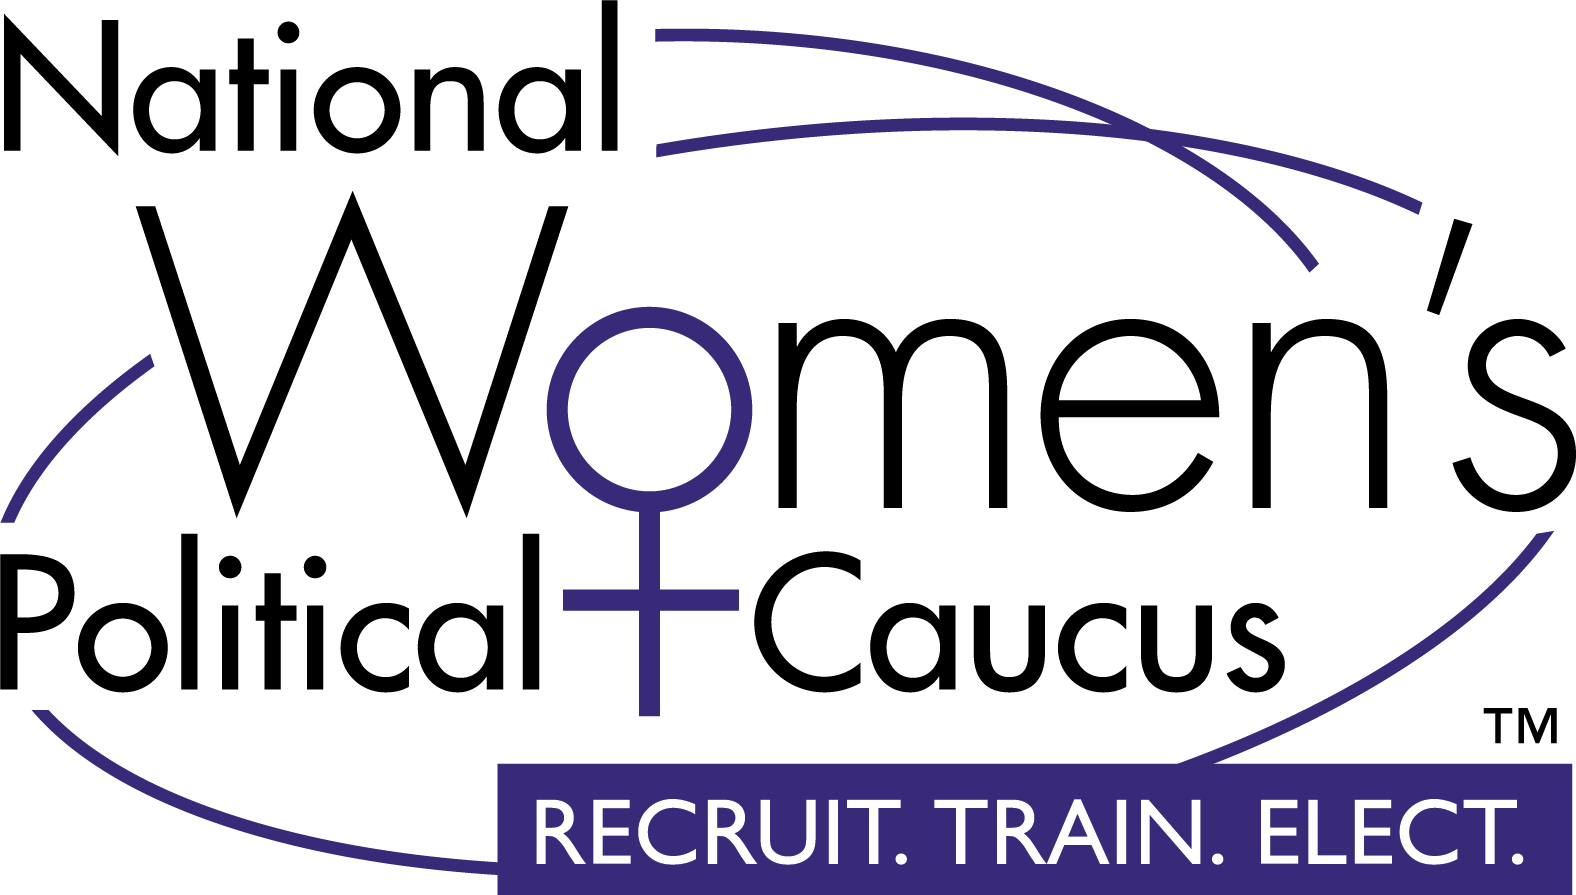 National Women’s Political Caucus